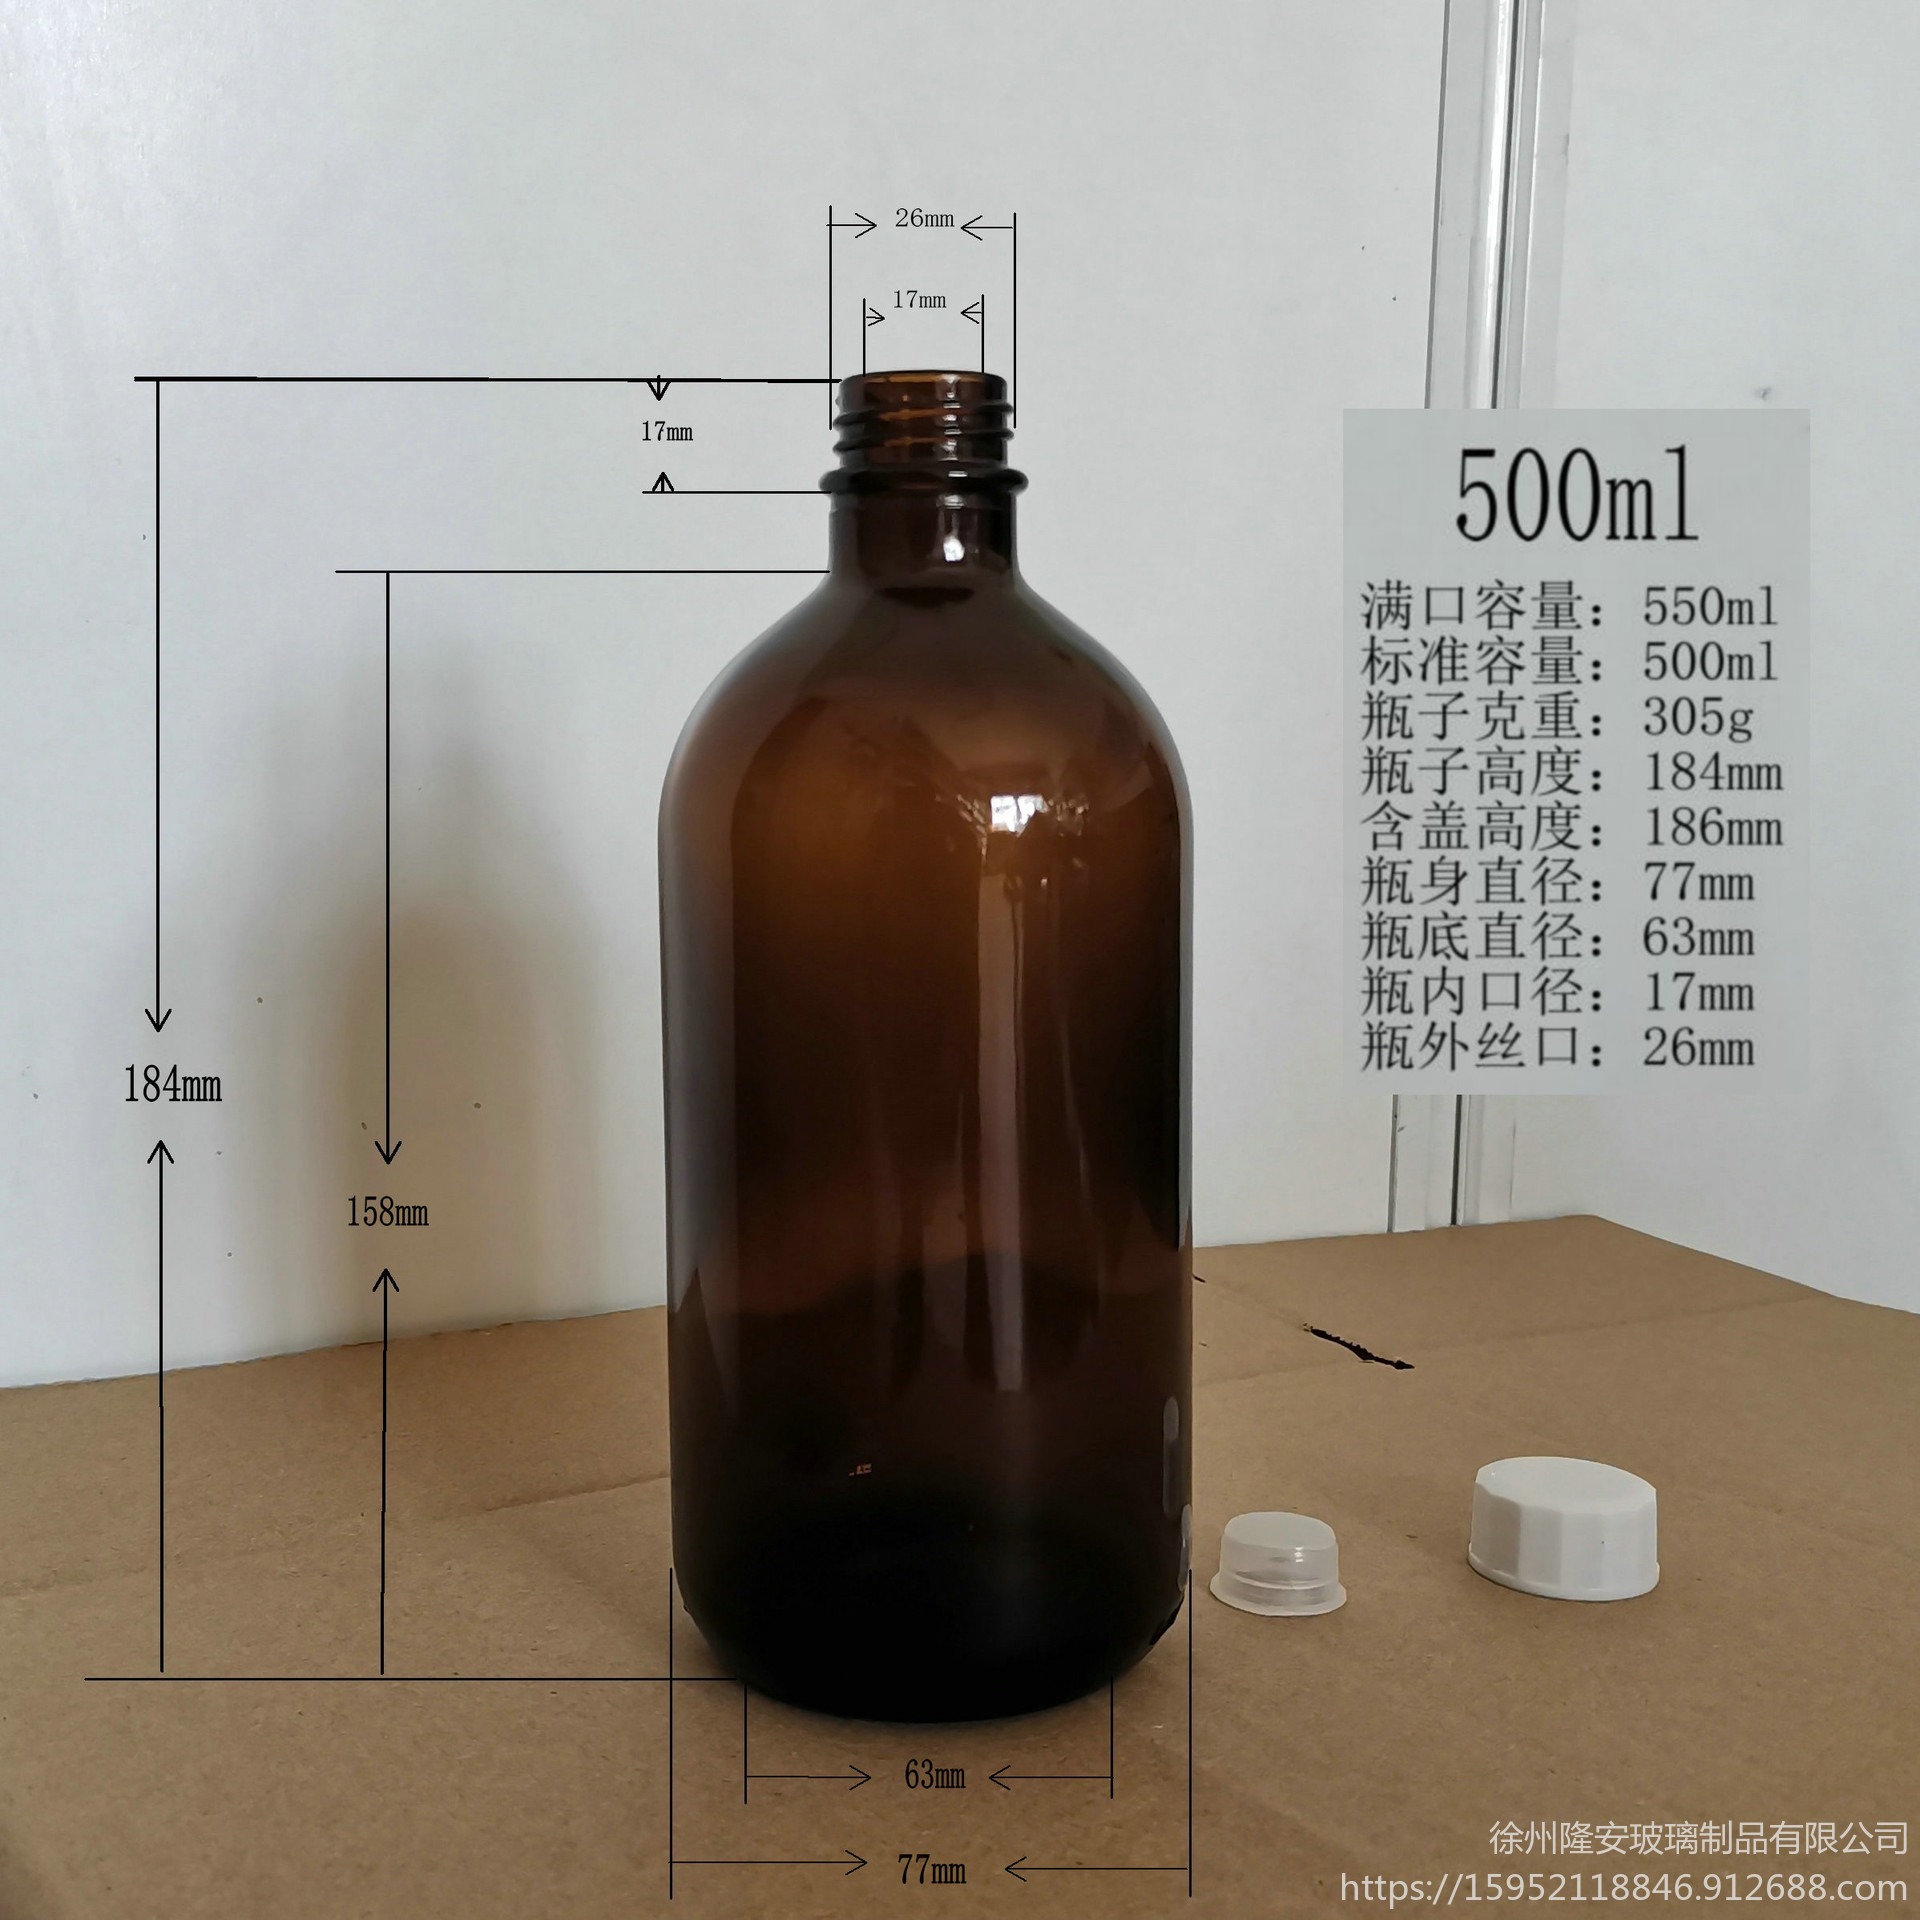 果醋药用化学试剂玻璃瓶生产厂家隆安100ml200ml250ml300ml400ml500ml1000ml茶色玻璃瓶